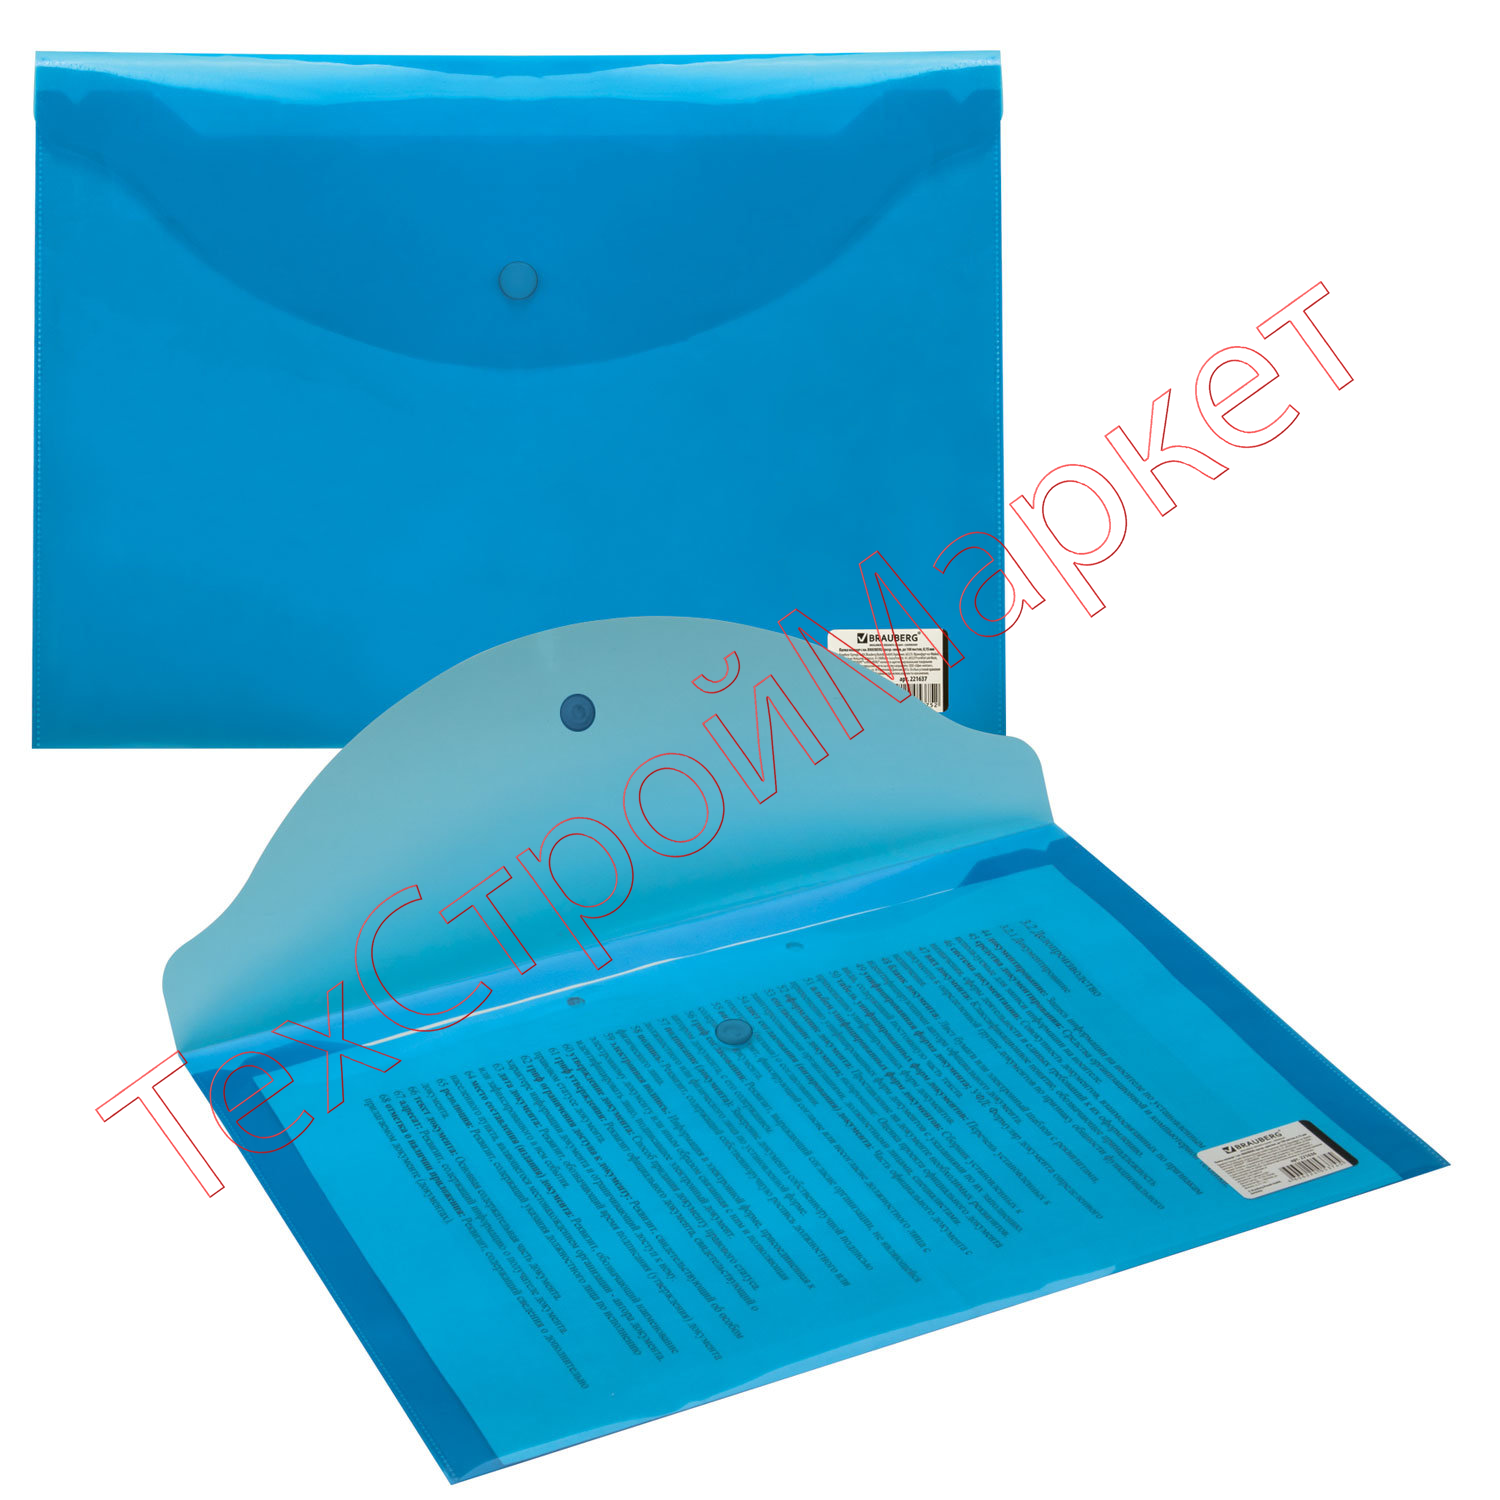 Папка-конверт с кнопкой BRAUBERG, А4, до 100 листов, прозрачная, синяя, 0,15 мм, 221637